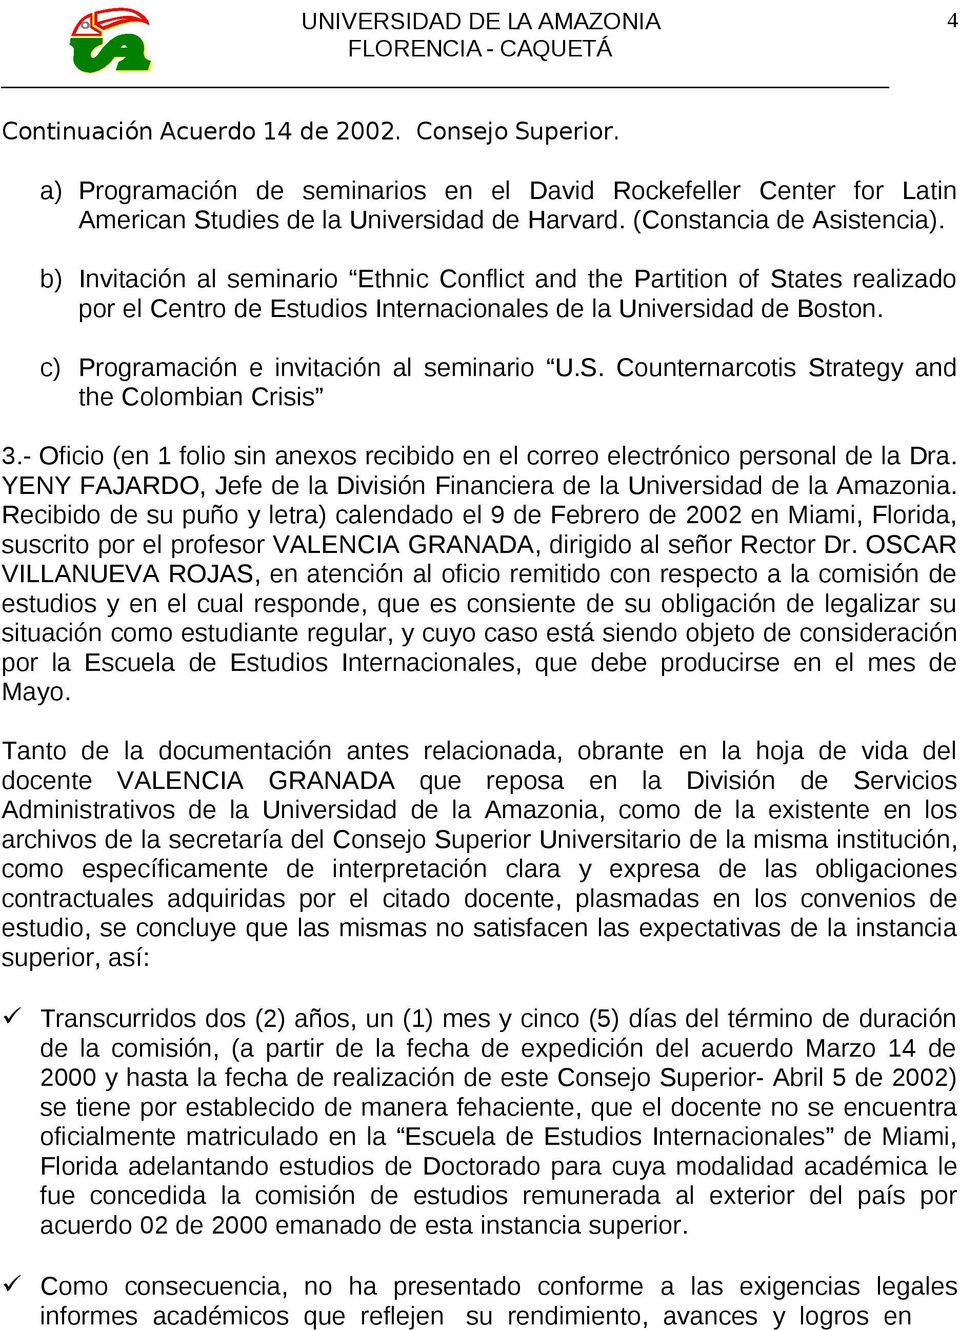 - Oficio (en 1 folio sin anexos recibido en el correo electrónico personal de la Dra. YENY FAJARDO, Jefe de la División Financiera de la Universidad de la Amazonia.